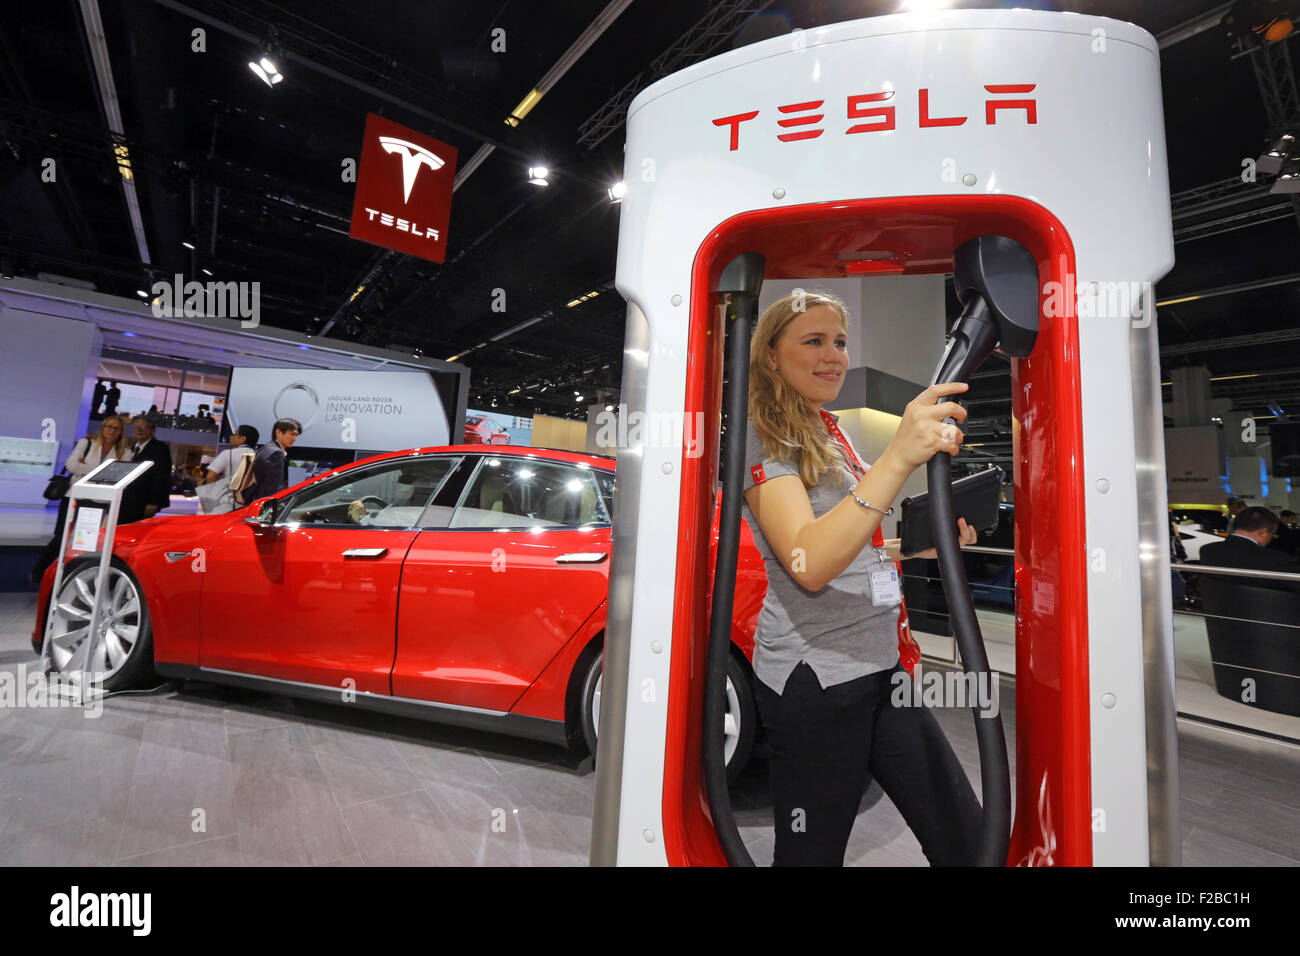 Station de charge électrique Tesla Supercharger au stand de Tesla à l'IAA 2015 Francfort 2015 à Francfort, Allemagne. Banque D'Images